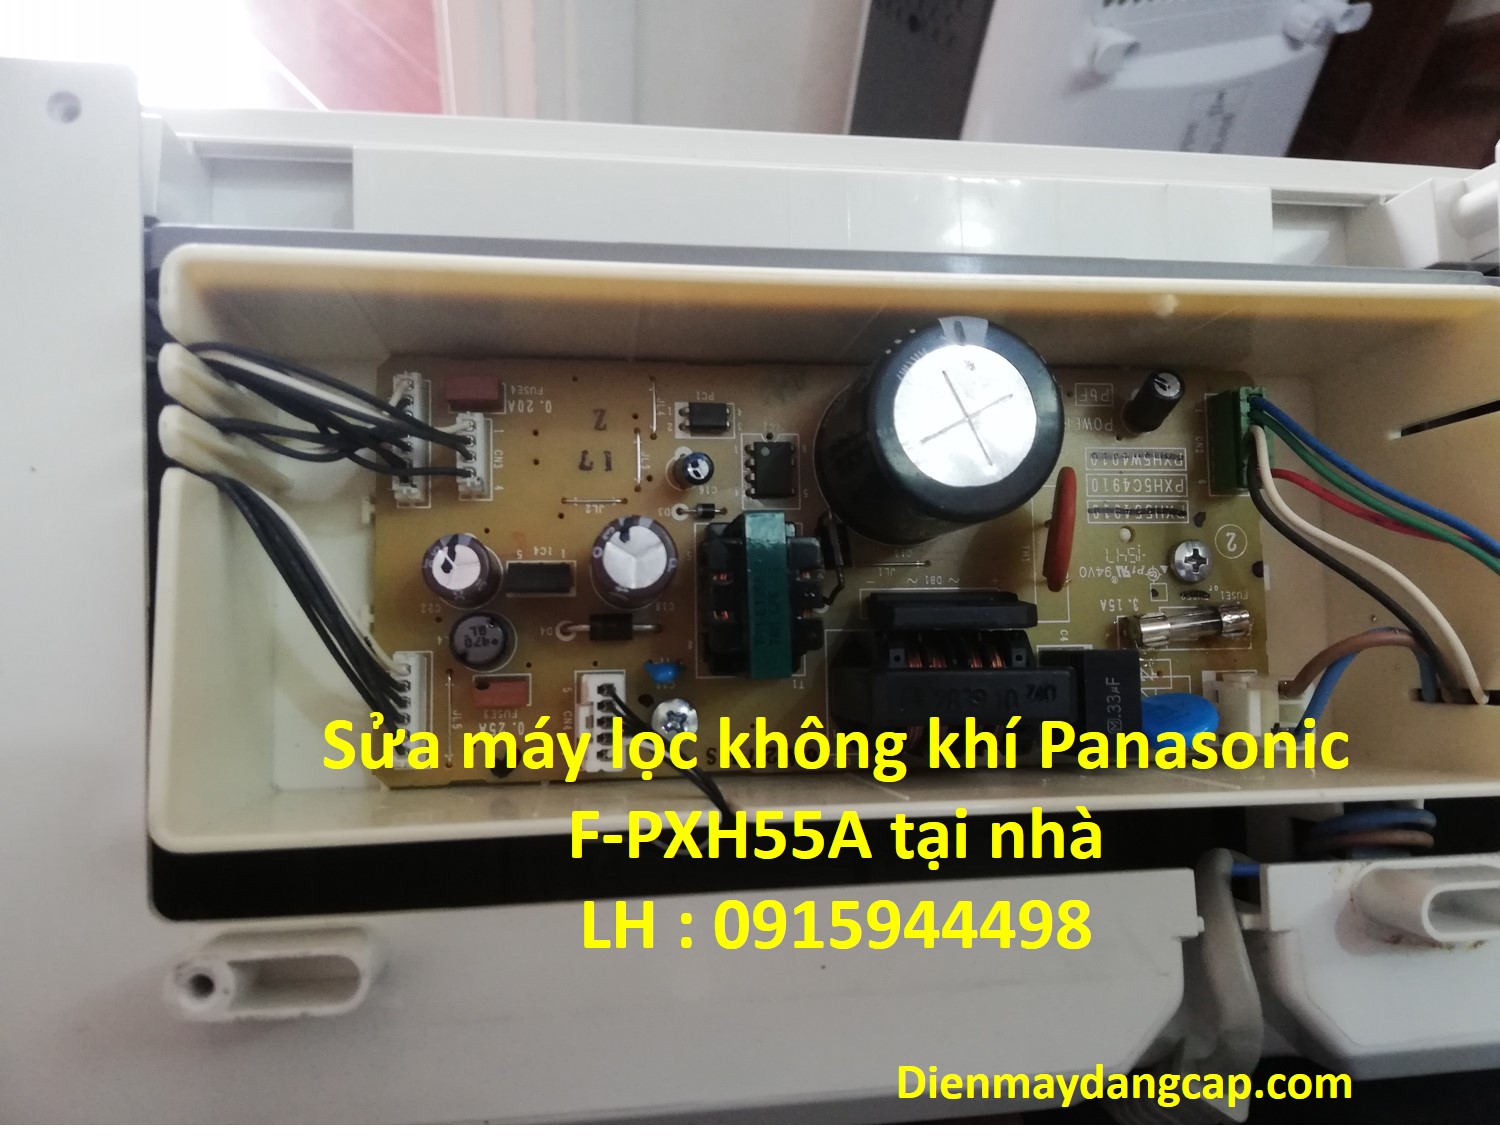 Sửa máy lọc không khí Panasonic 